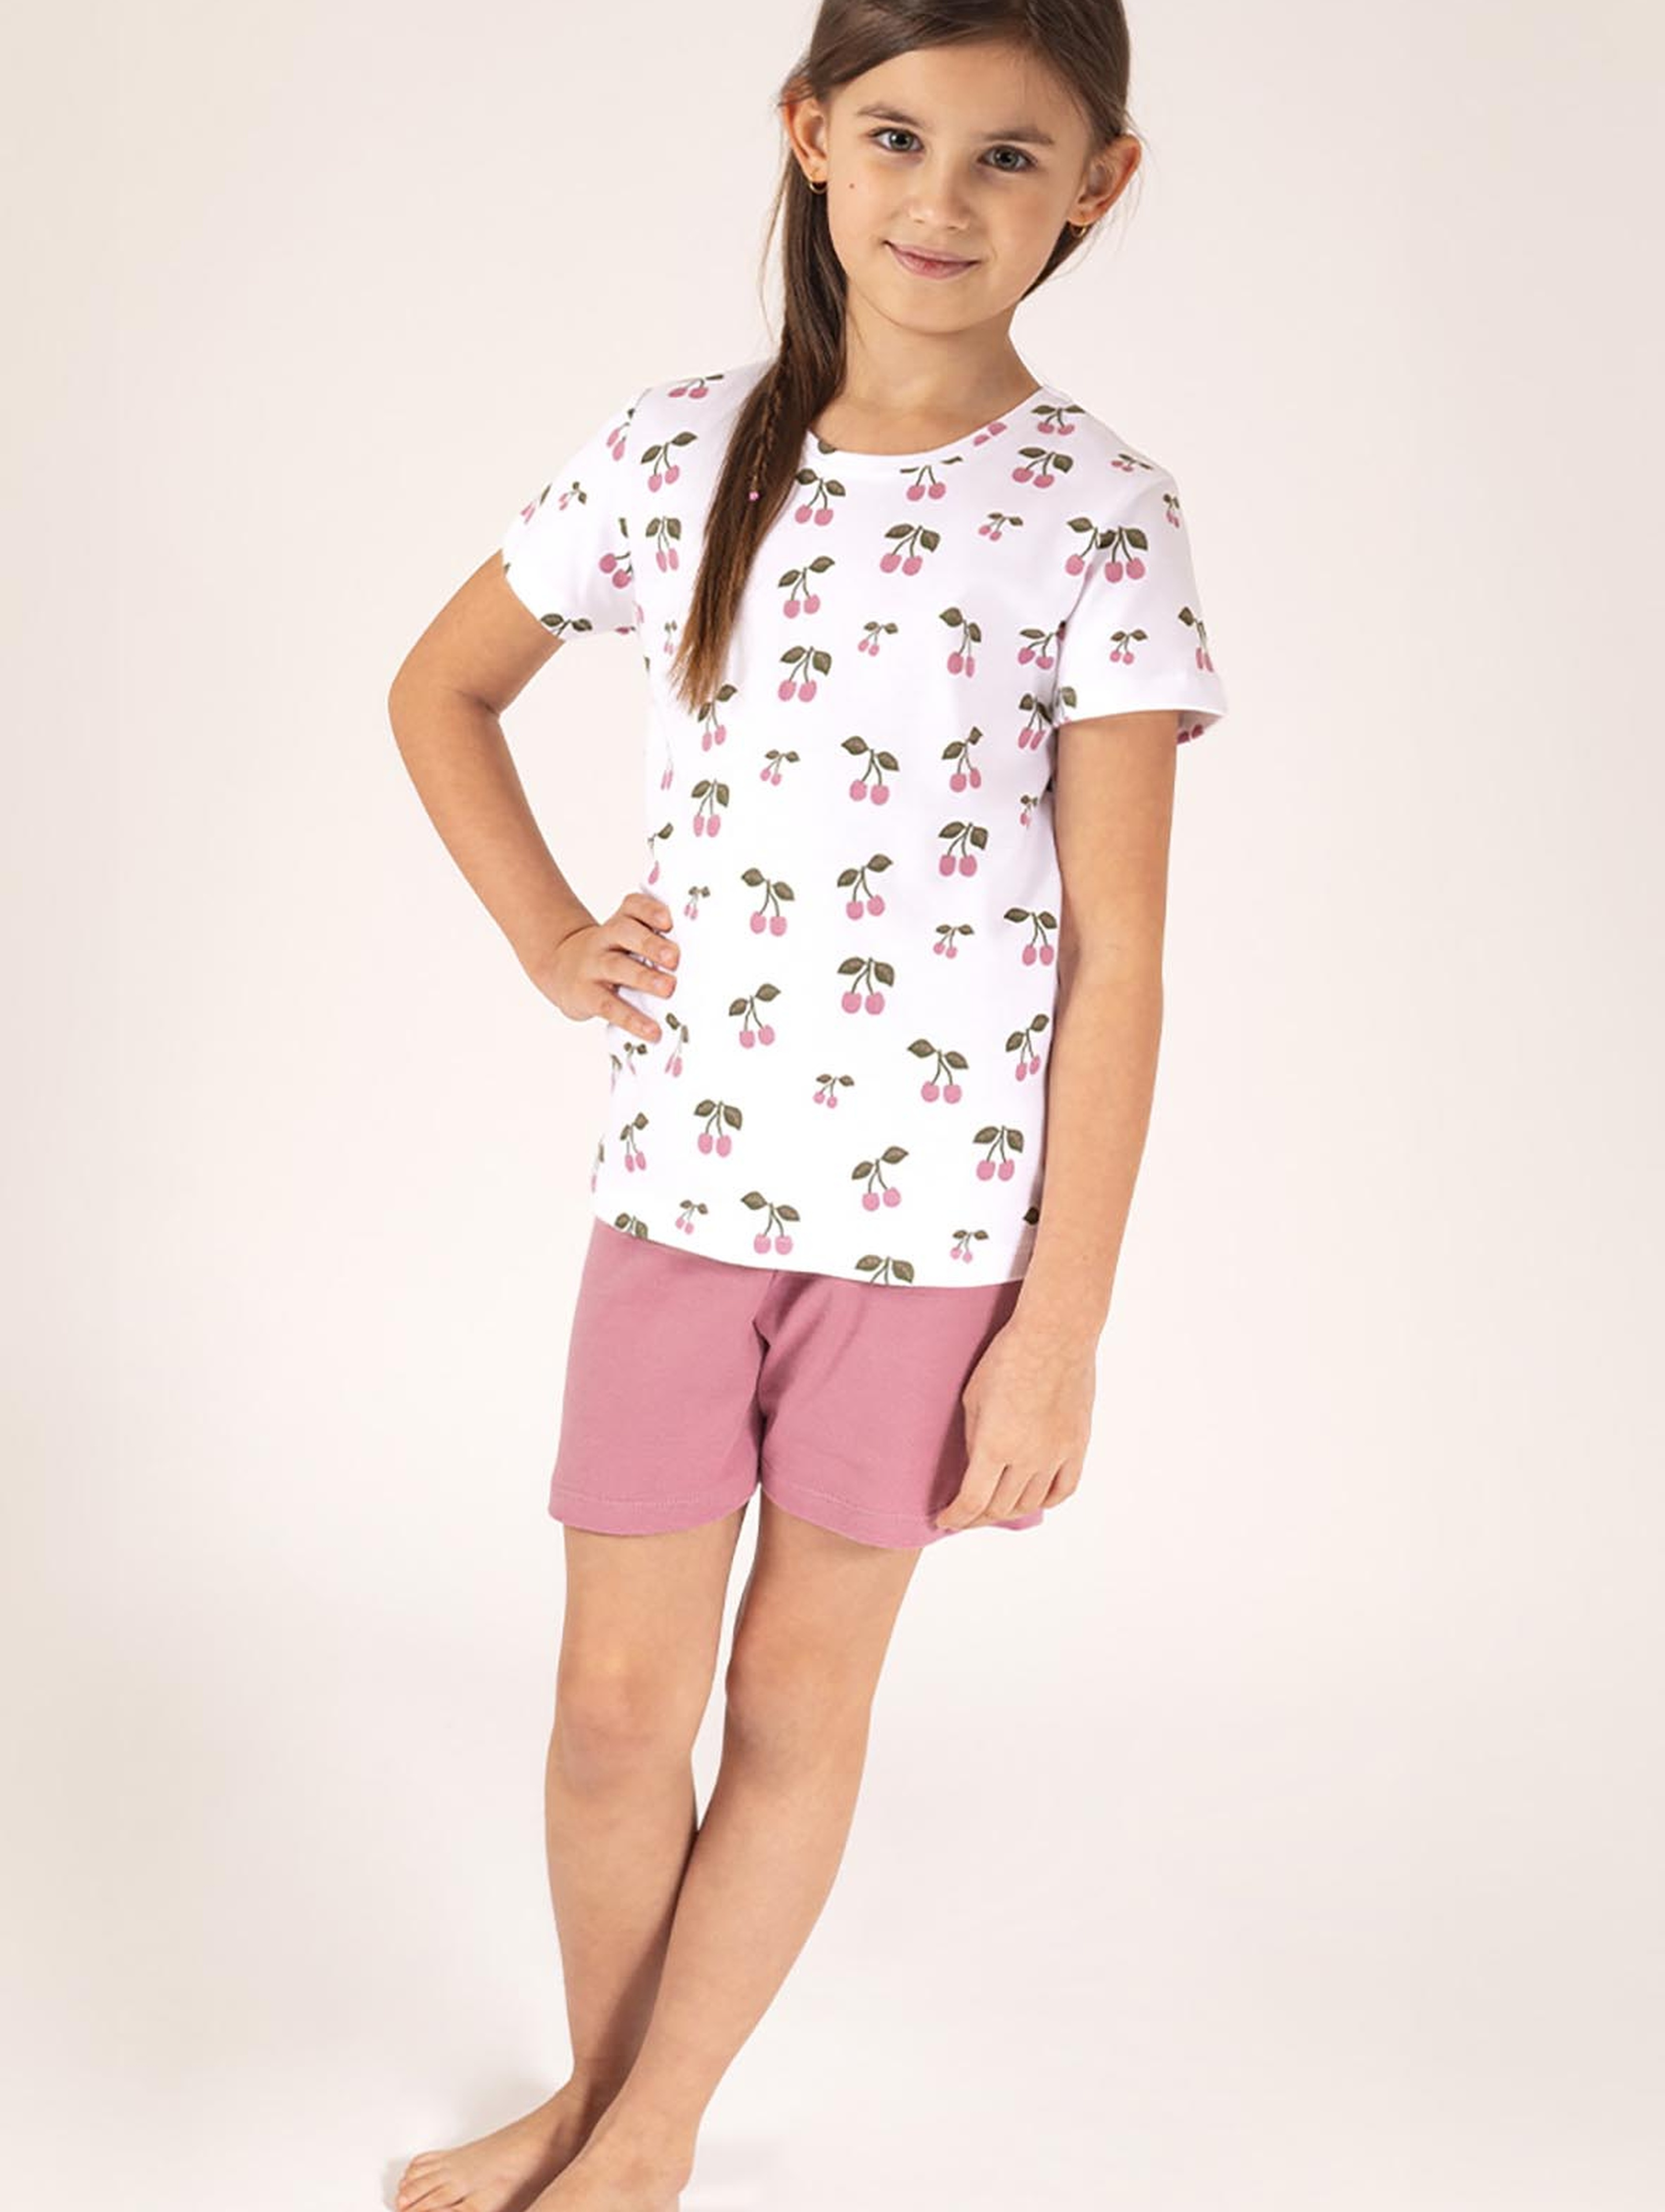 Bawełniany komplet dziewczęcy t-shirt w wisienki i wrzosowe spodenki